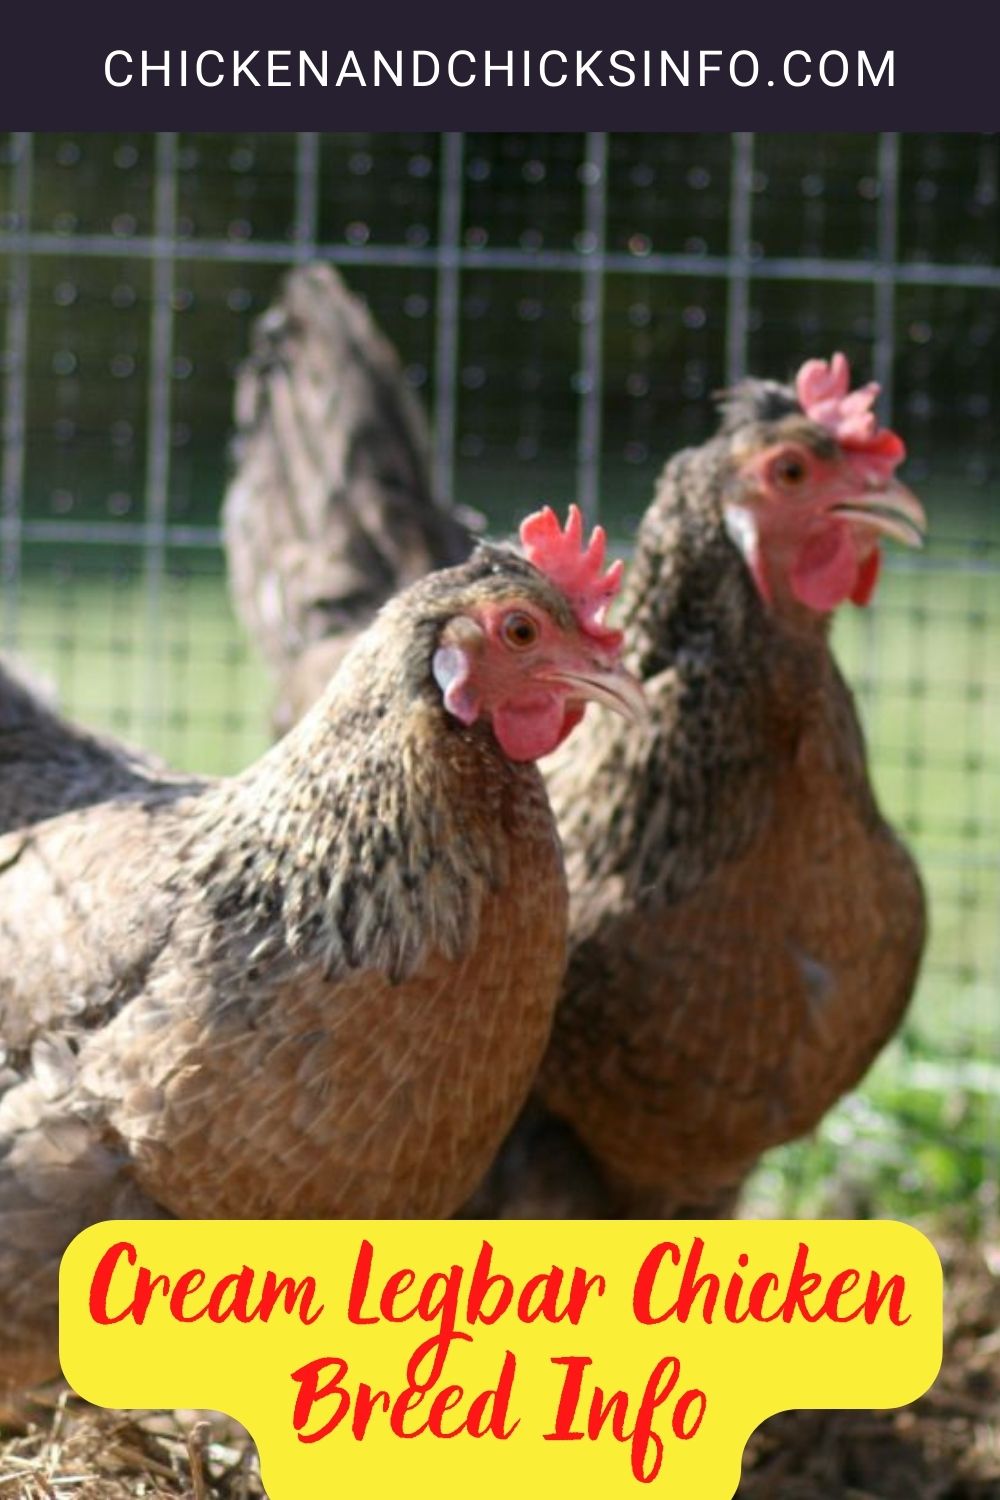 Cream Legbar Chicken Breed Info pinterest image.